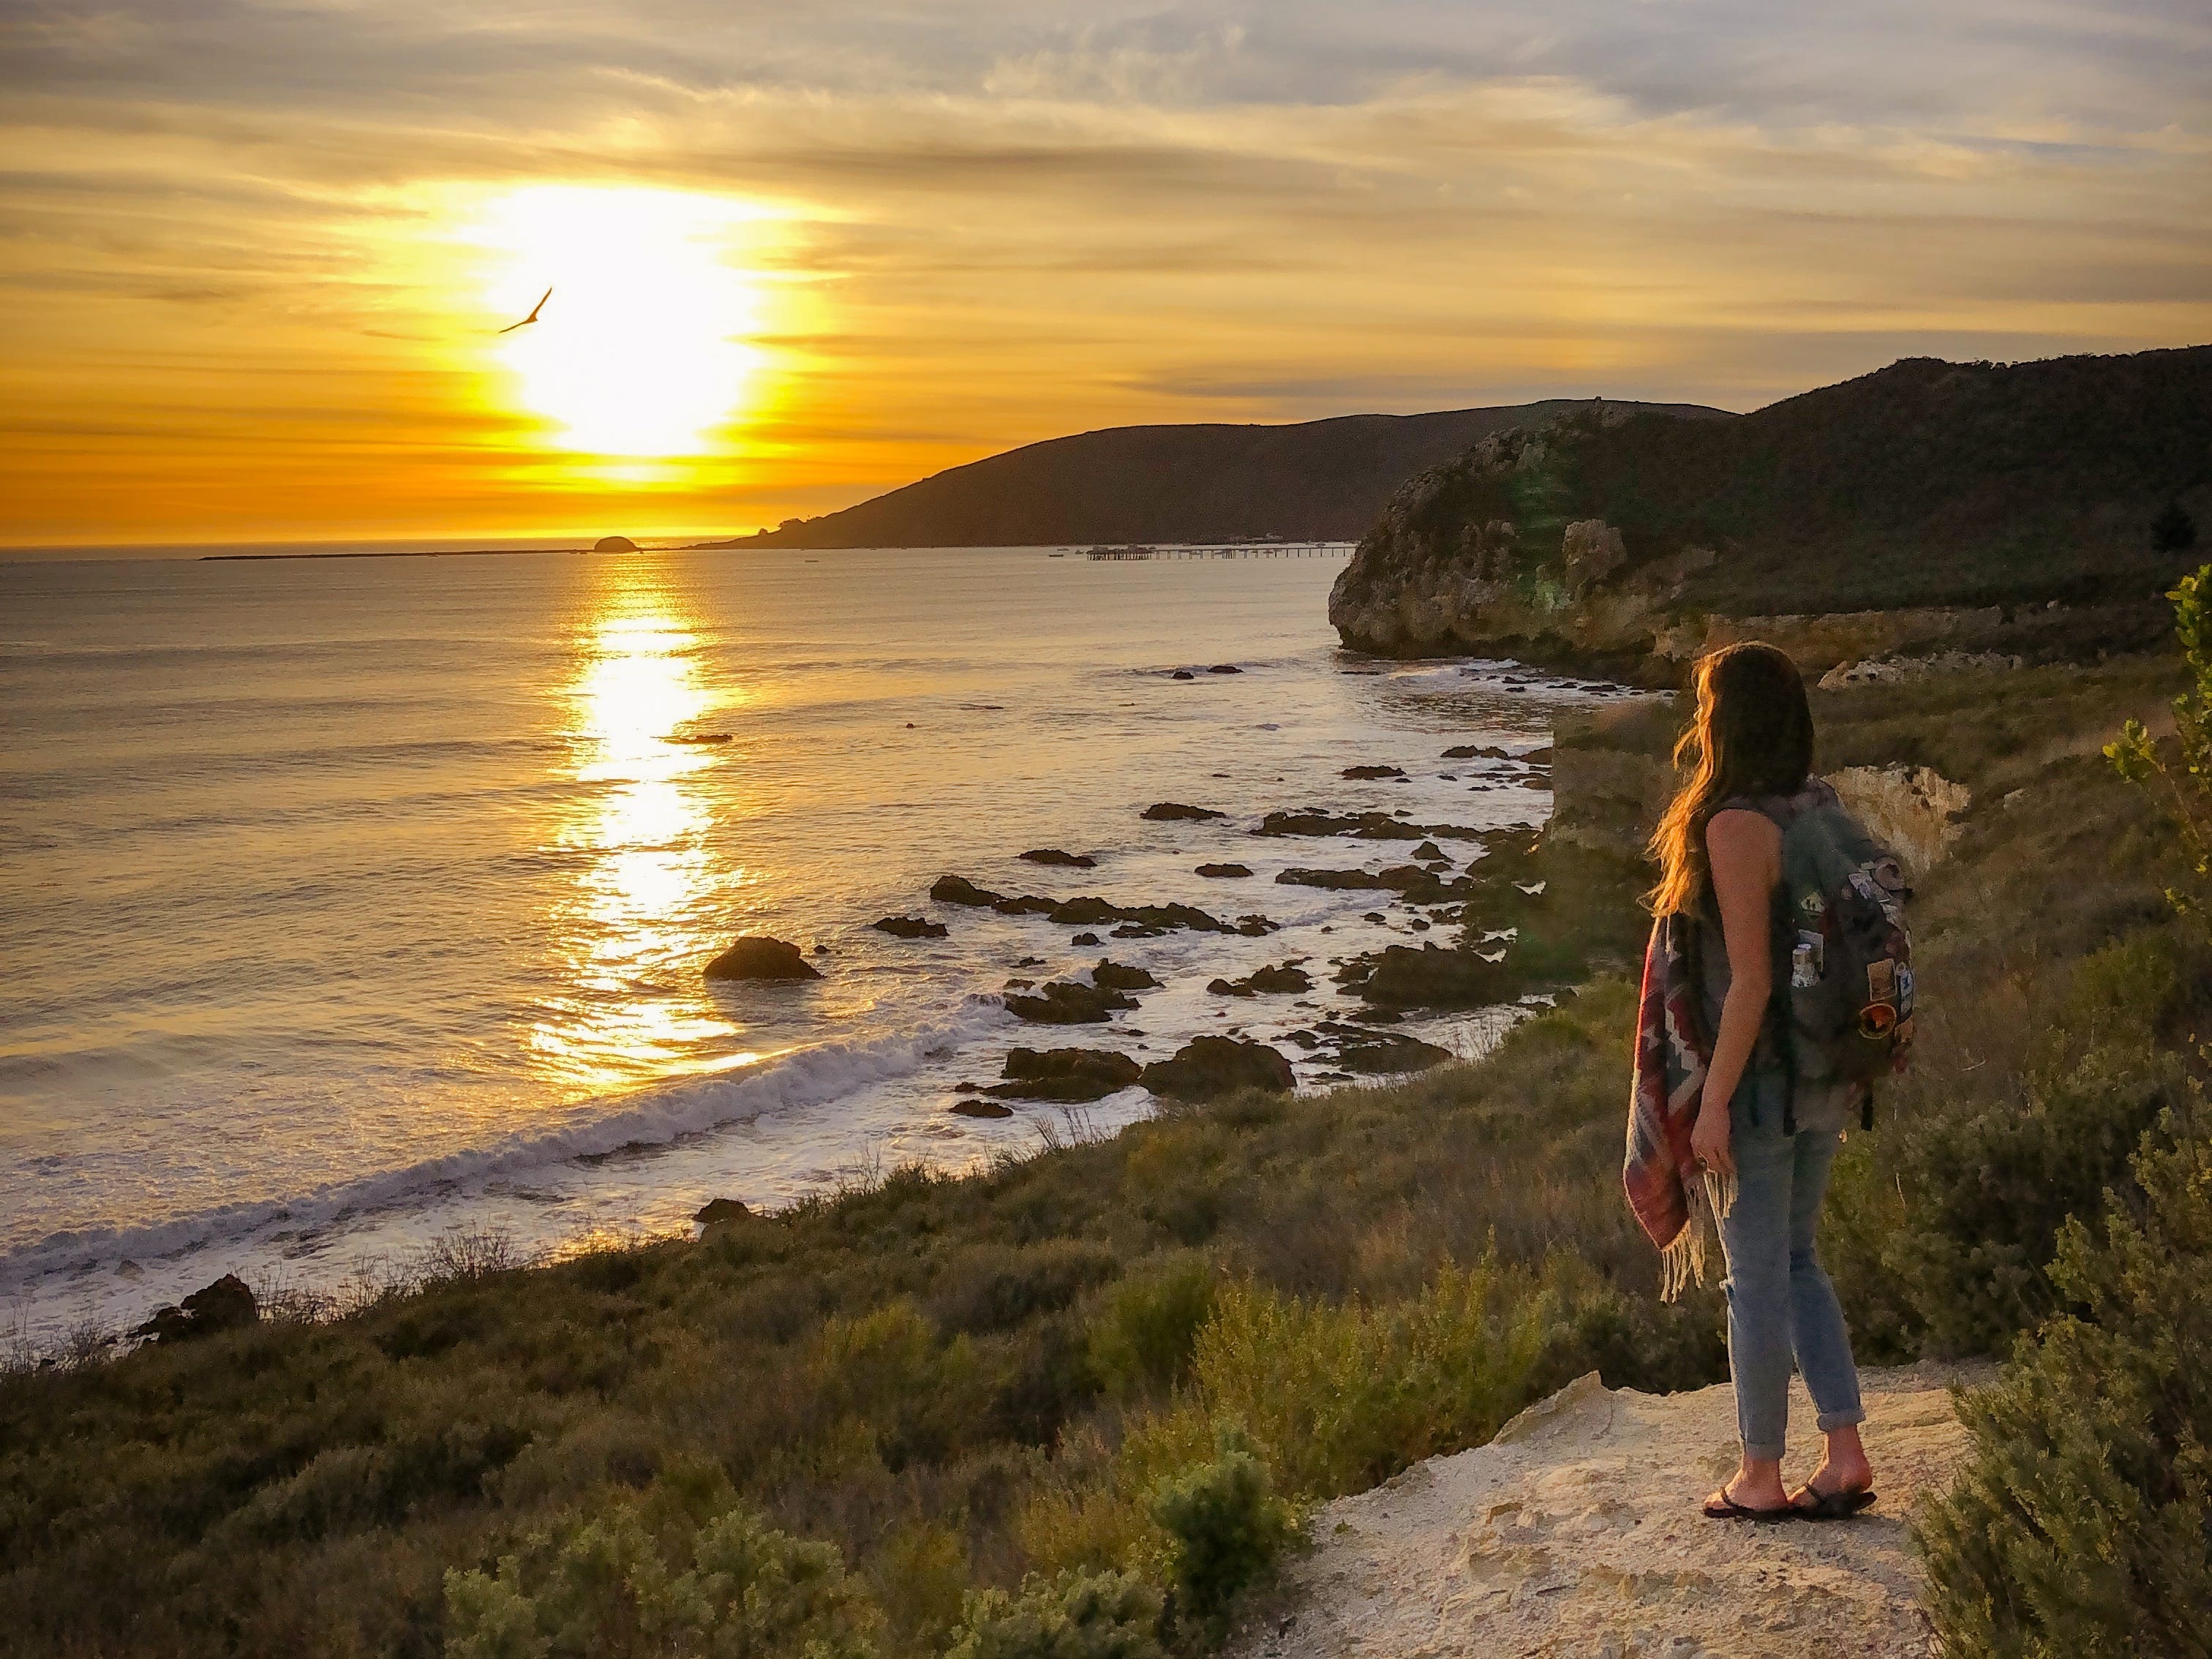 Emily blickt auf den Sonnenuntergang an einem kalifornischen Strand.